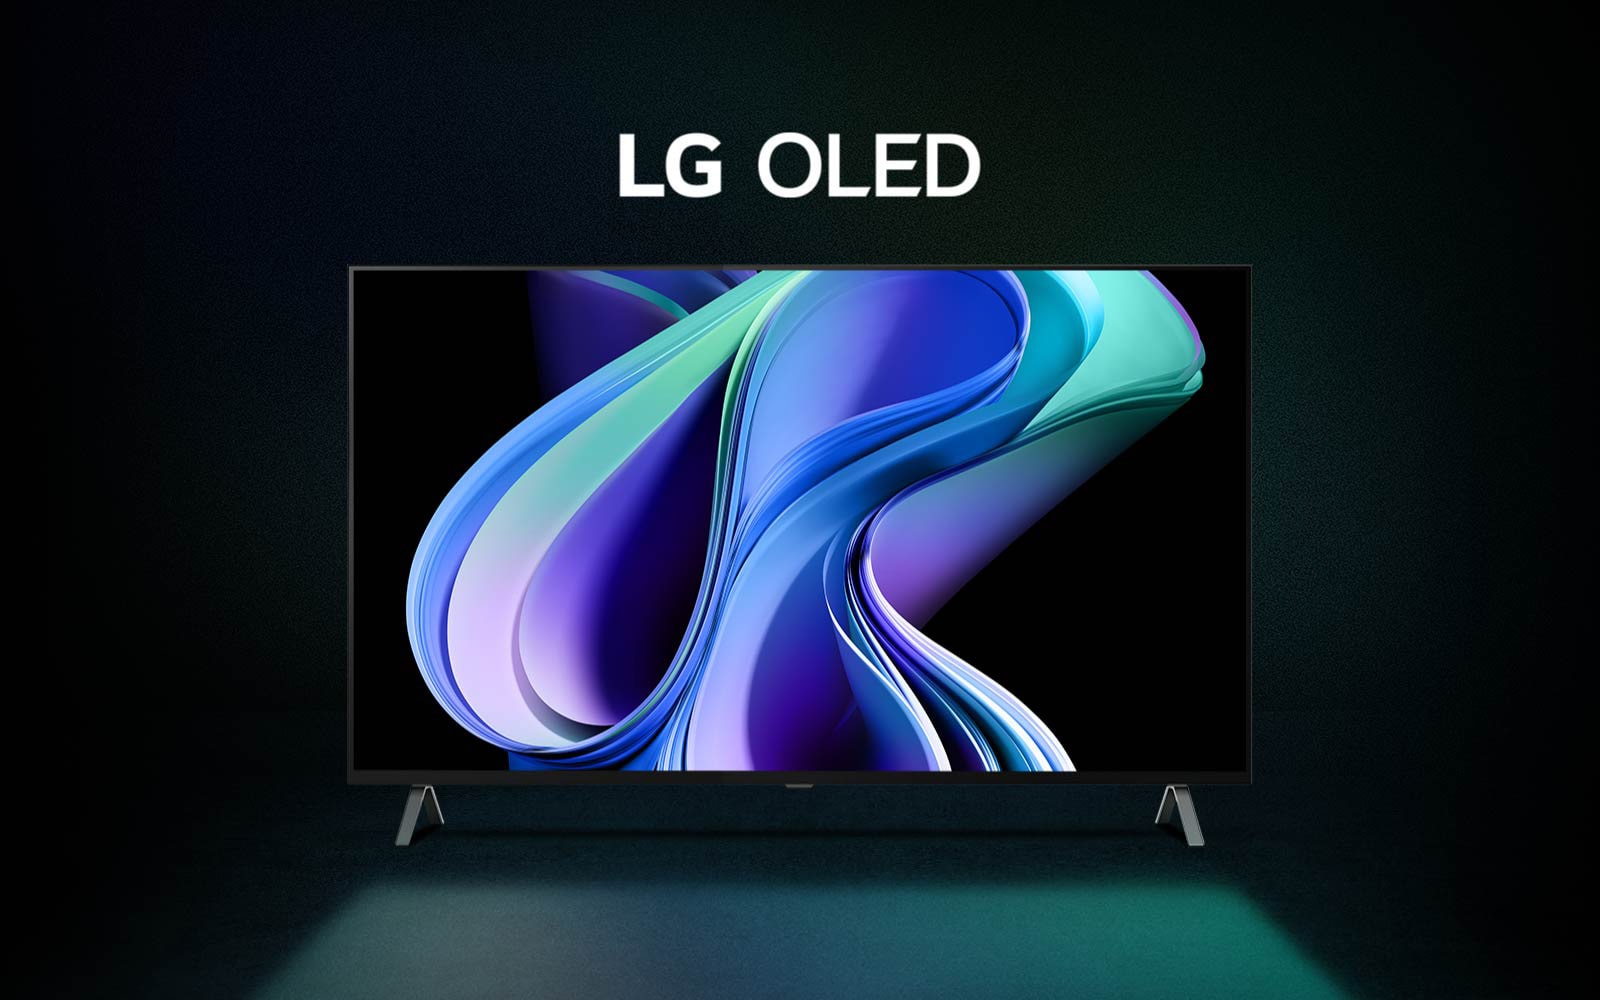 فيديو لتلفزيون LG OLED A3 يظهر أمام خلفية متدرجة بالأسود والأزرق والأخضر مع عمل فني تجريدي بألوان مشابهة على الشاشة. يتم تكبير الصورة، وتظهر الكلمات LG OLED باللون الأبيض.